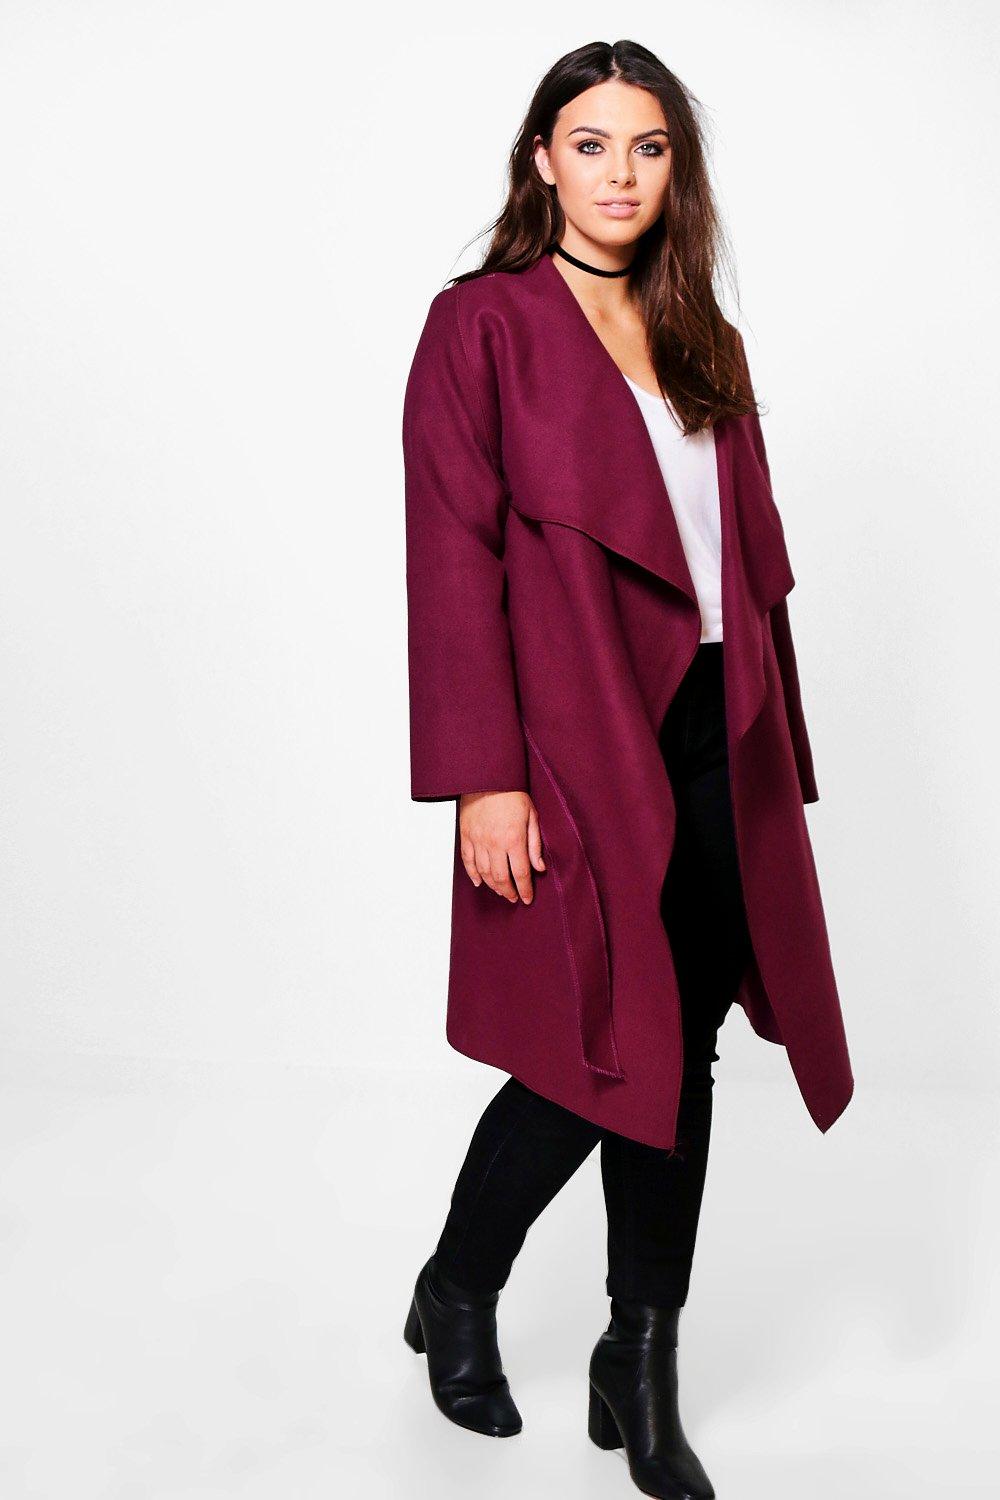 Boohoo Womens Plus Rosie Wool Look Wrap Front Coat | eBay